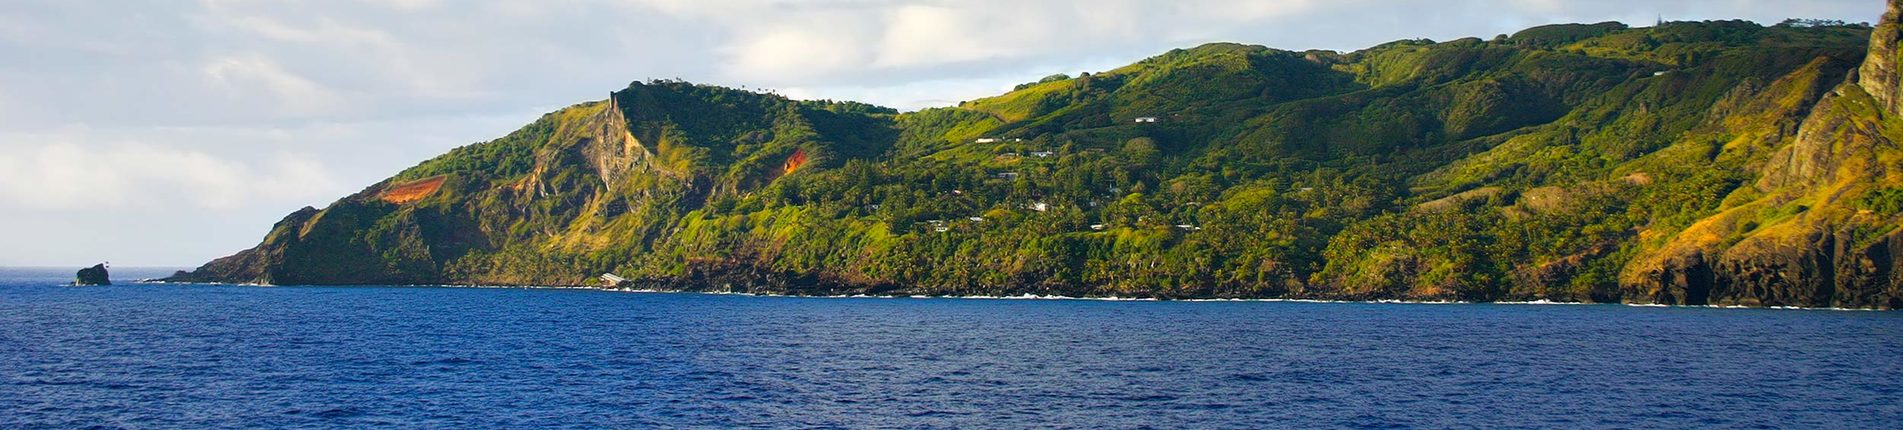 Bounty Bay Passage (Pitcairnovy ostrovy)